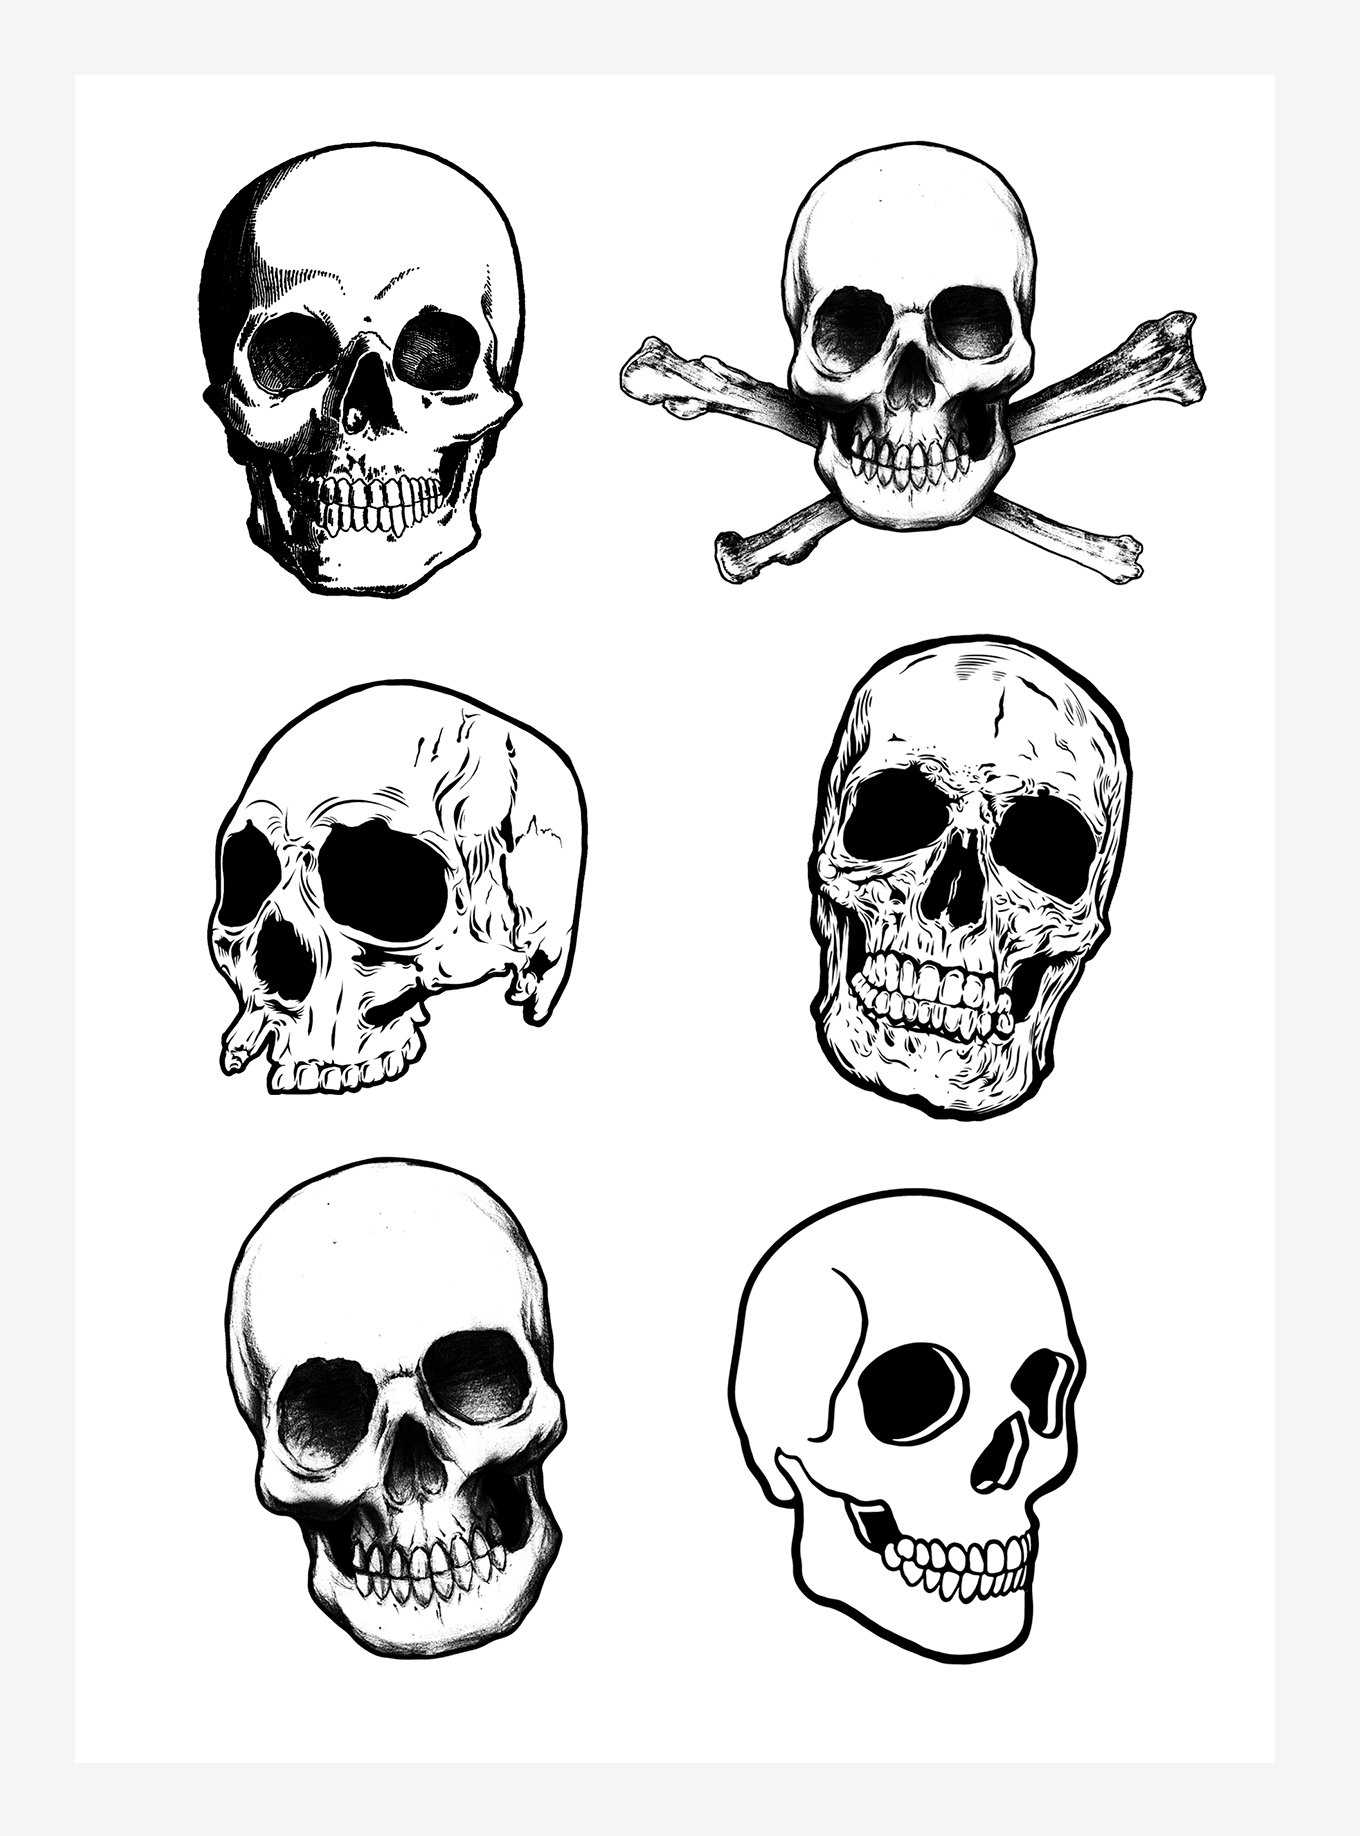 Skulls Kiss-Cut Sticker Sheet, , hi-res